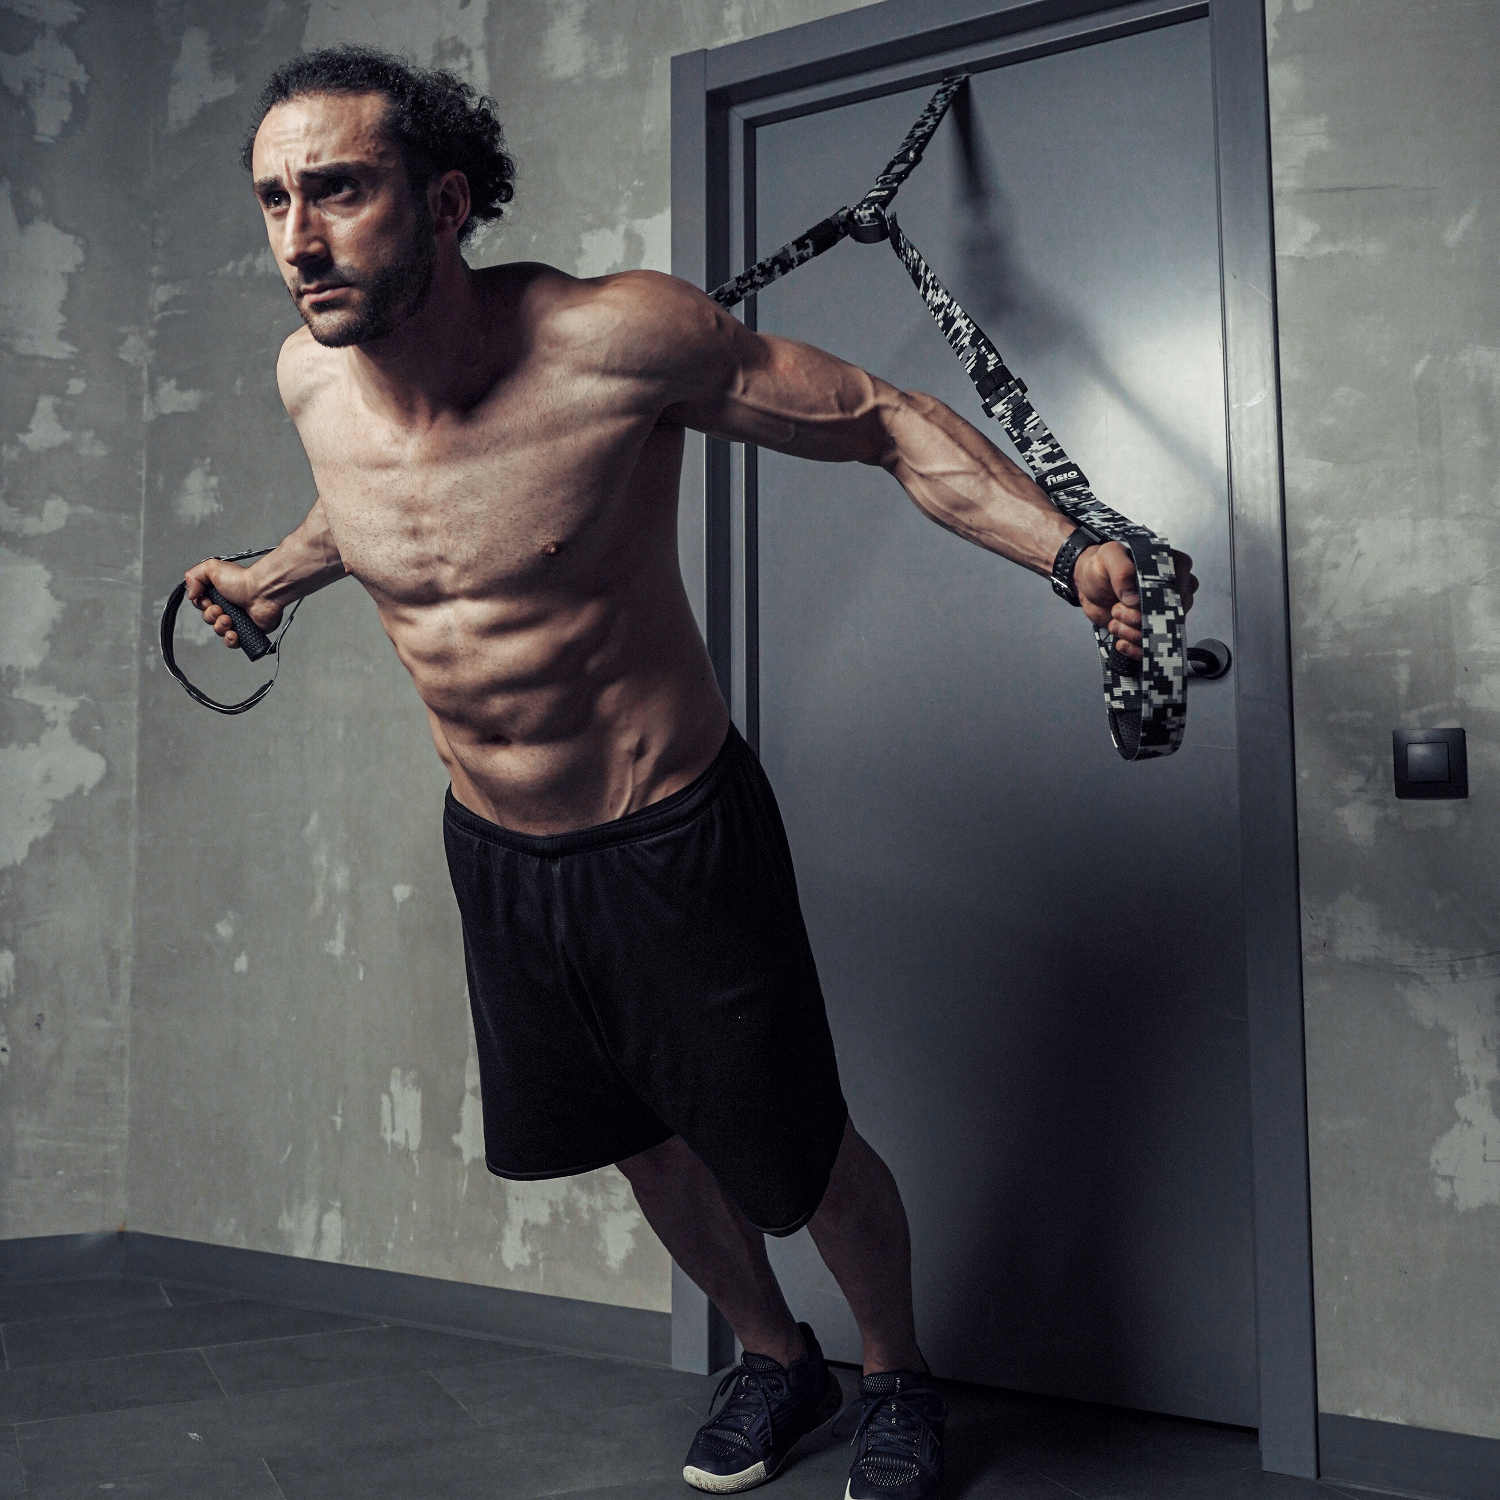 Мужчина в форме и с накаченным прессом делает упражнение на тренировочных петлях от двери